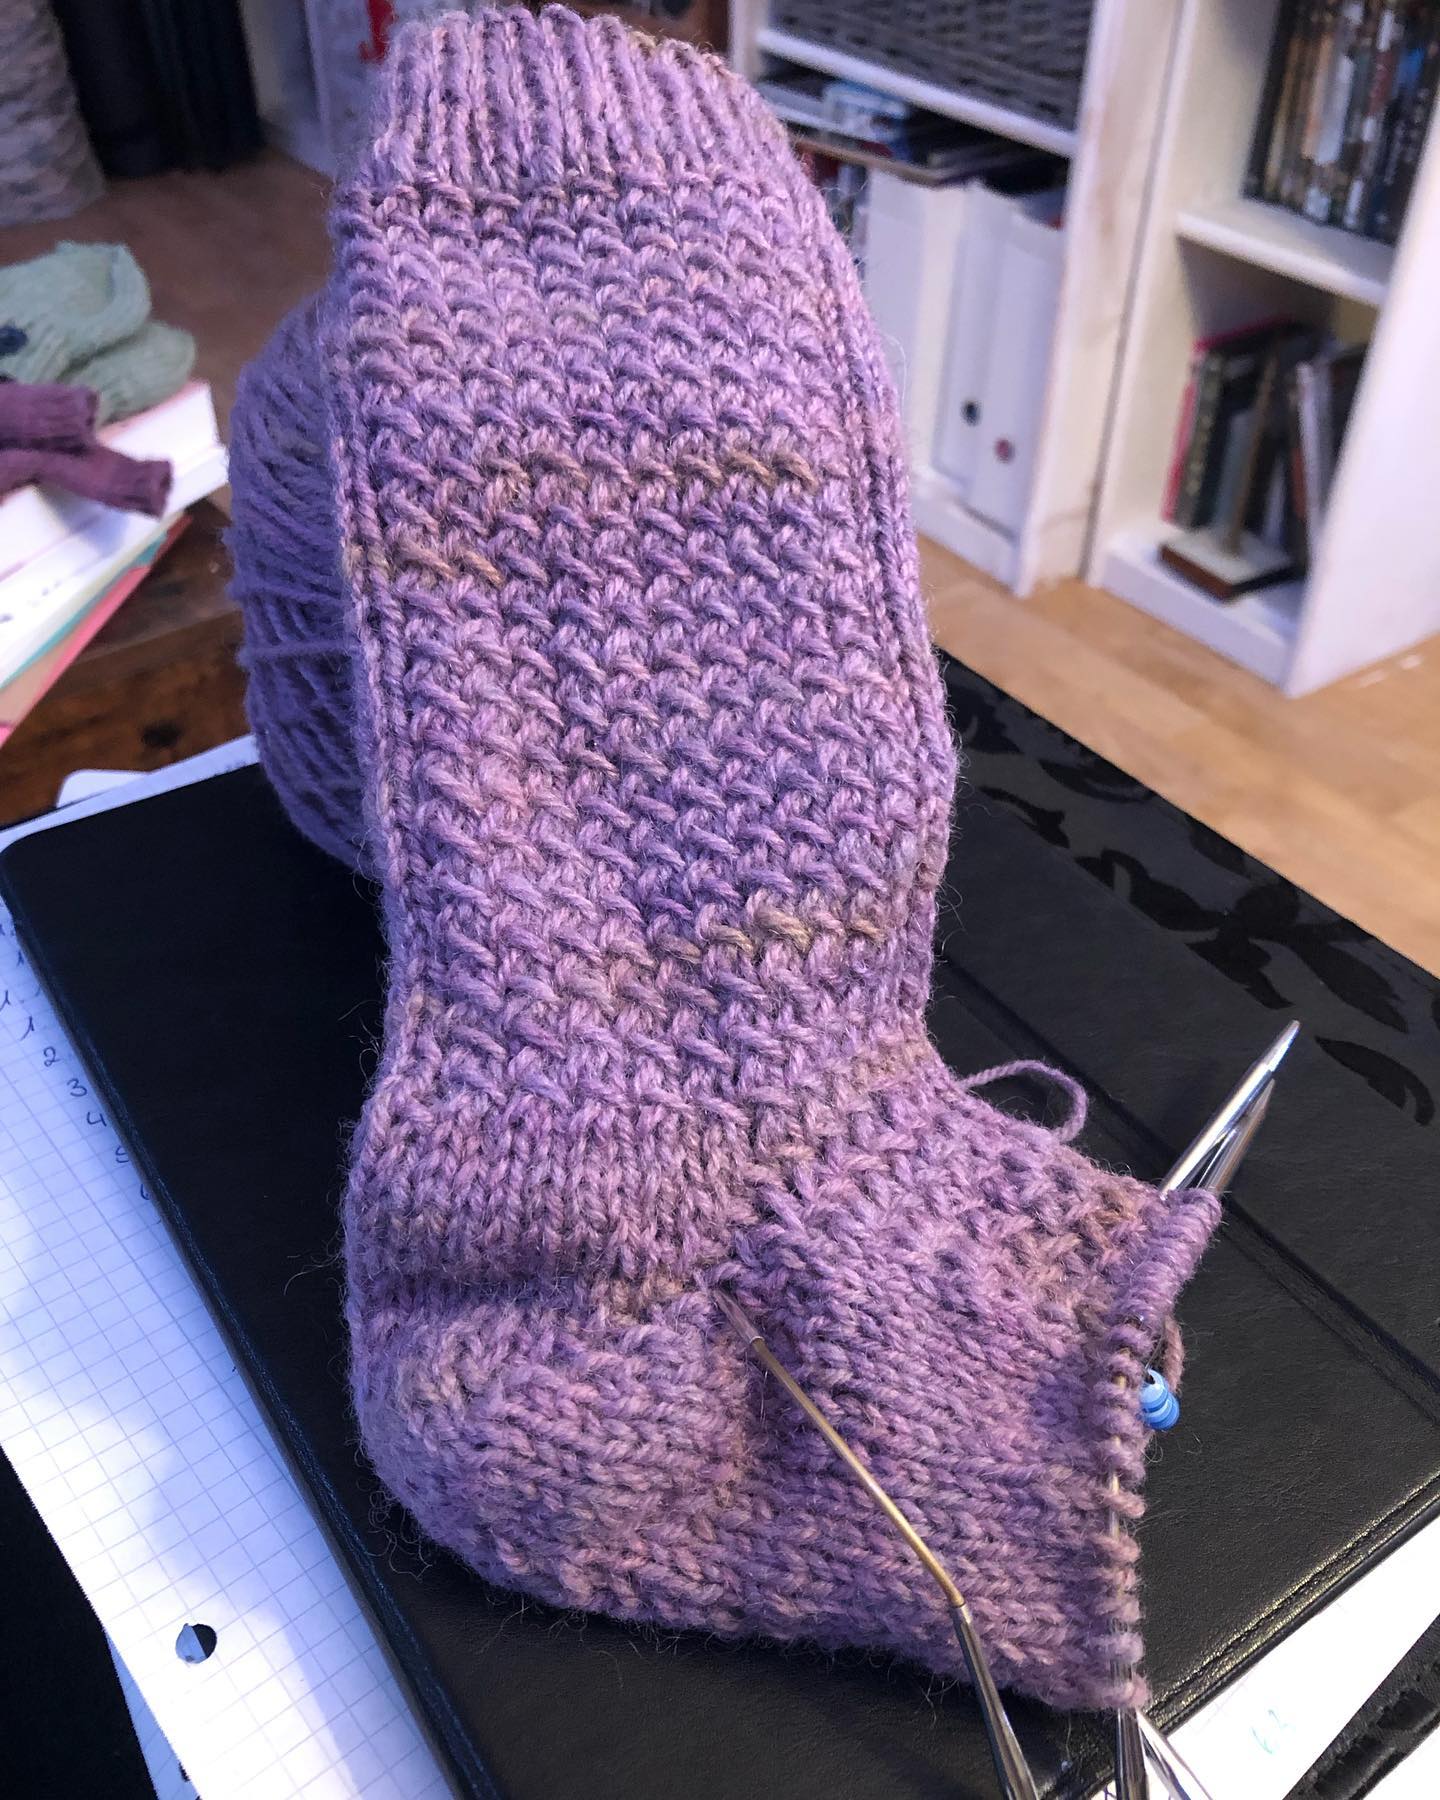 Neues Jahr , neue Socken . Angestrickt aus meinem stash Plastikfrei und handgefärbt . Muster ist #skippystripes von @the.nerd.knits 
#wolfsockenschafekal #knitting #stash #knittingsocks #knittingsocksoninstagram #handgefärbtewolle #plastikfrei #finkhofwolle #merino #januar #warmefüße #socks #socken #menden #sauerland #dernächstewinterkommtbestimmt #strickenmachtglücklich #strickenistwiezaubernkönnen #strickenistmeinyoga #lila #noplastic